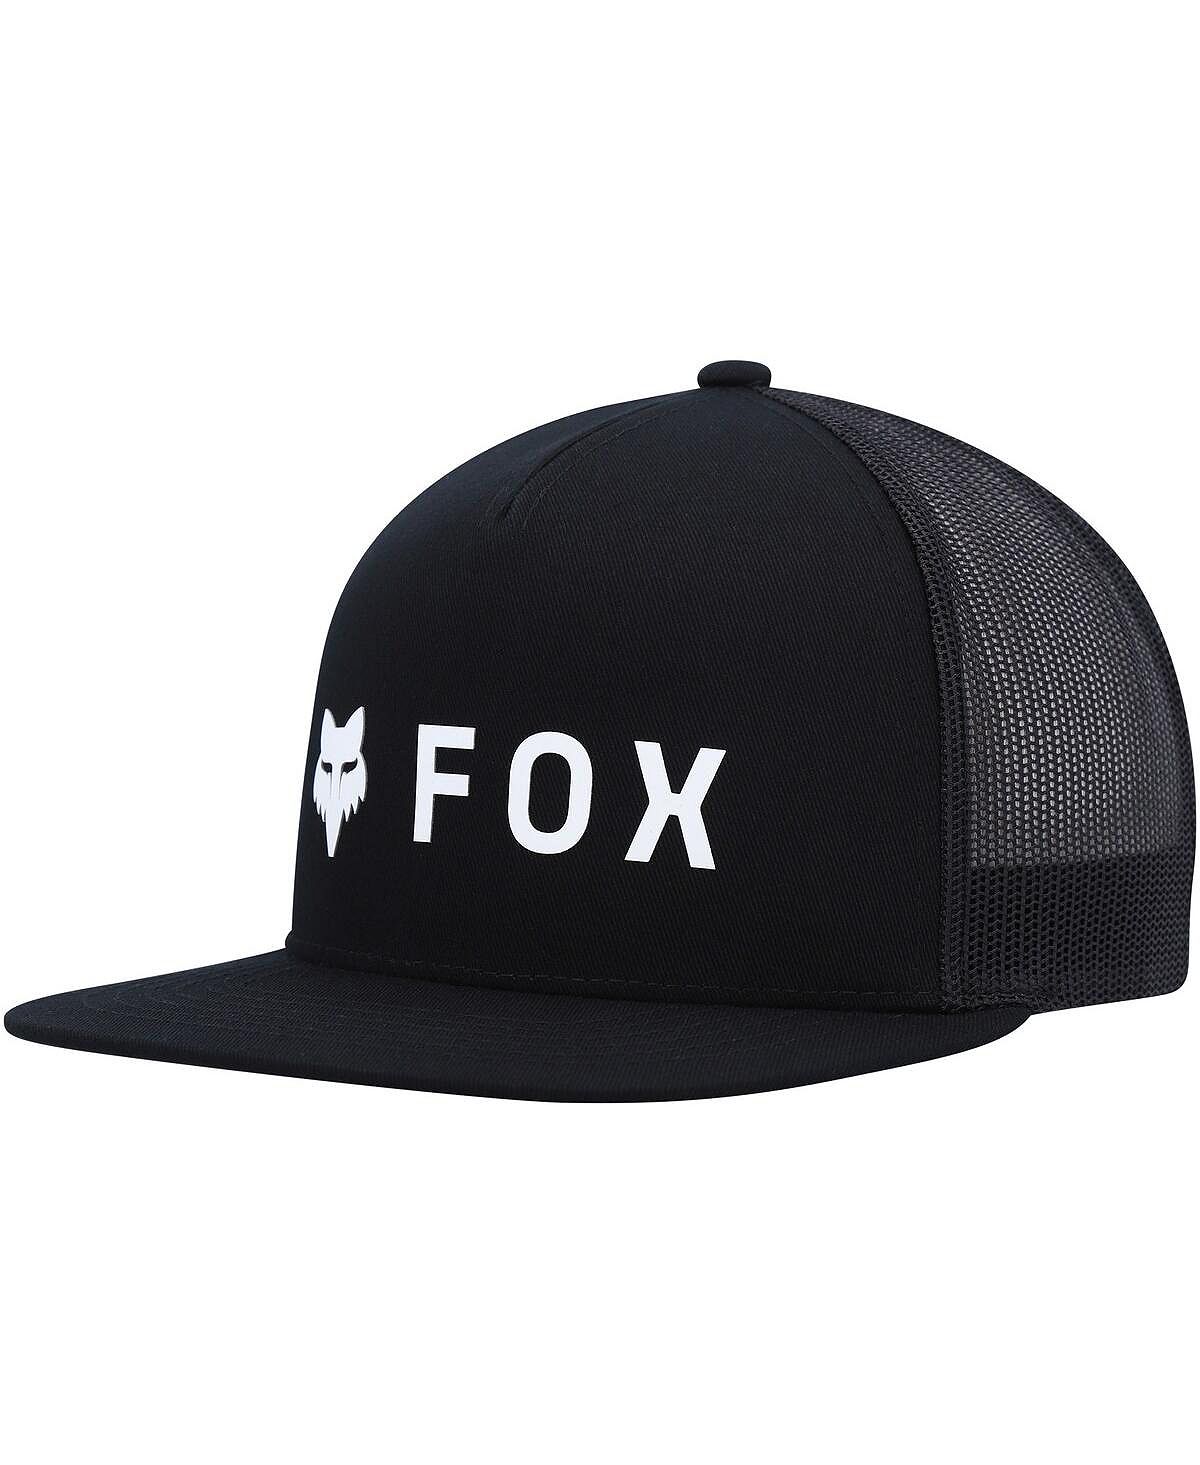 Мужская черная шляпа Snapback Absolute Mesh Snapback Fox